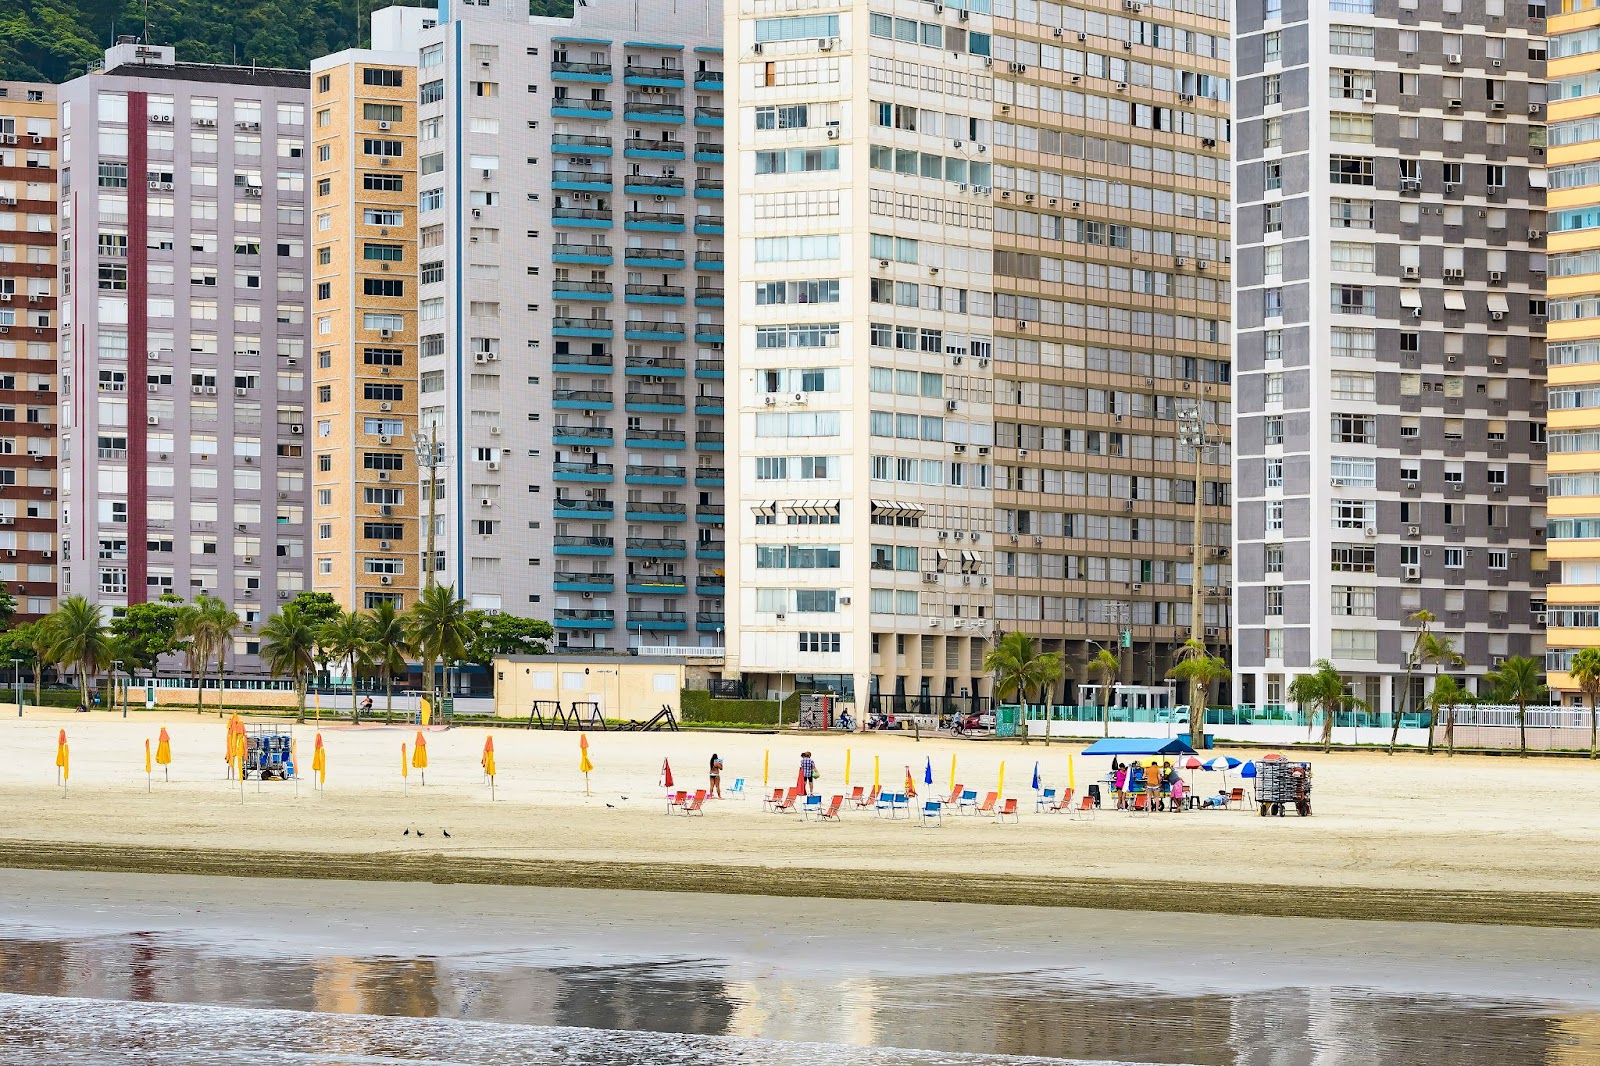 Faixa de areia de uma das praias de Santos com alguns banhistas em cadeiras de praia de frente para o mar. Em segundo plano, atrás da faixa de areia, diversos prédios de cores diferentes.